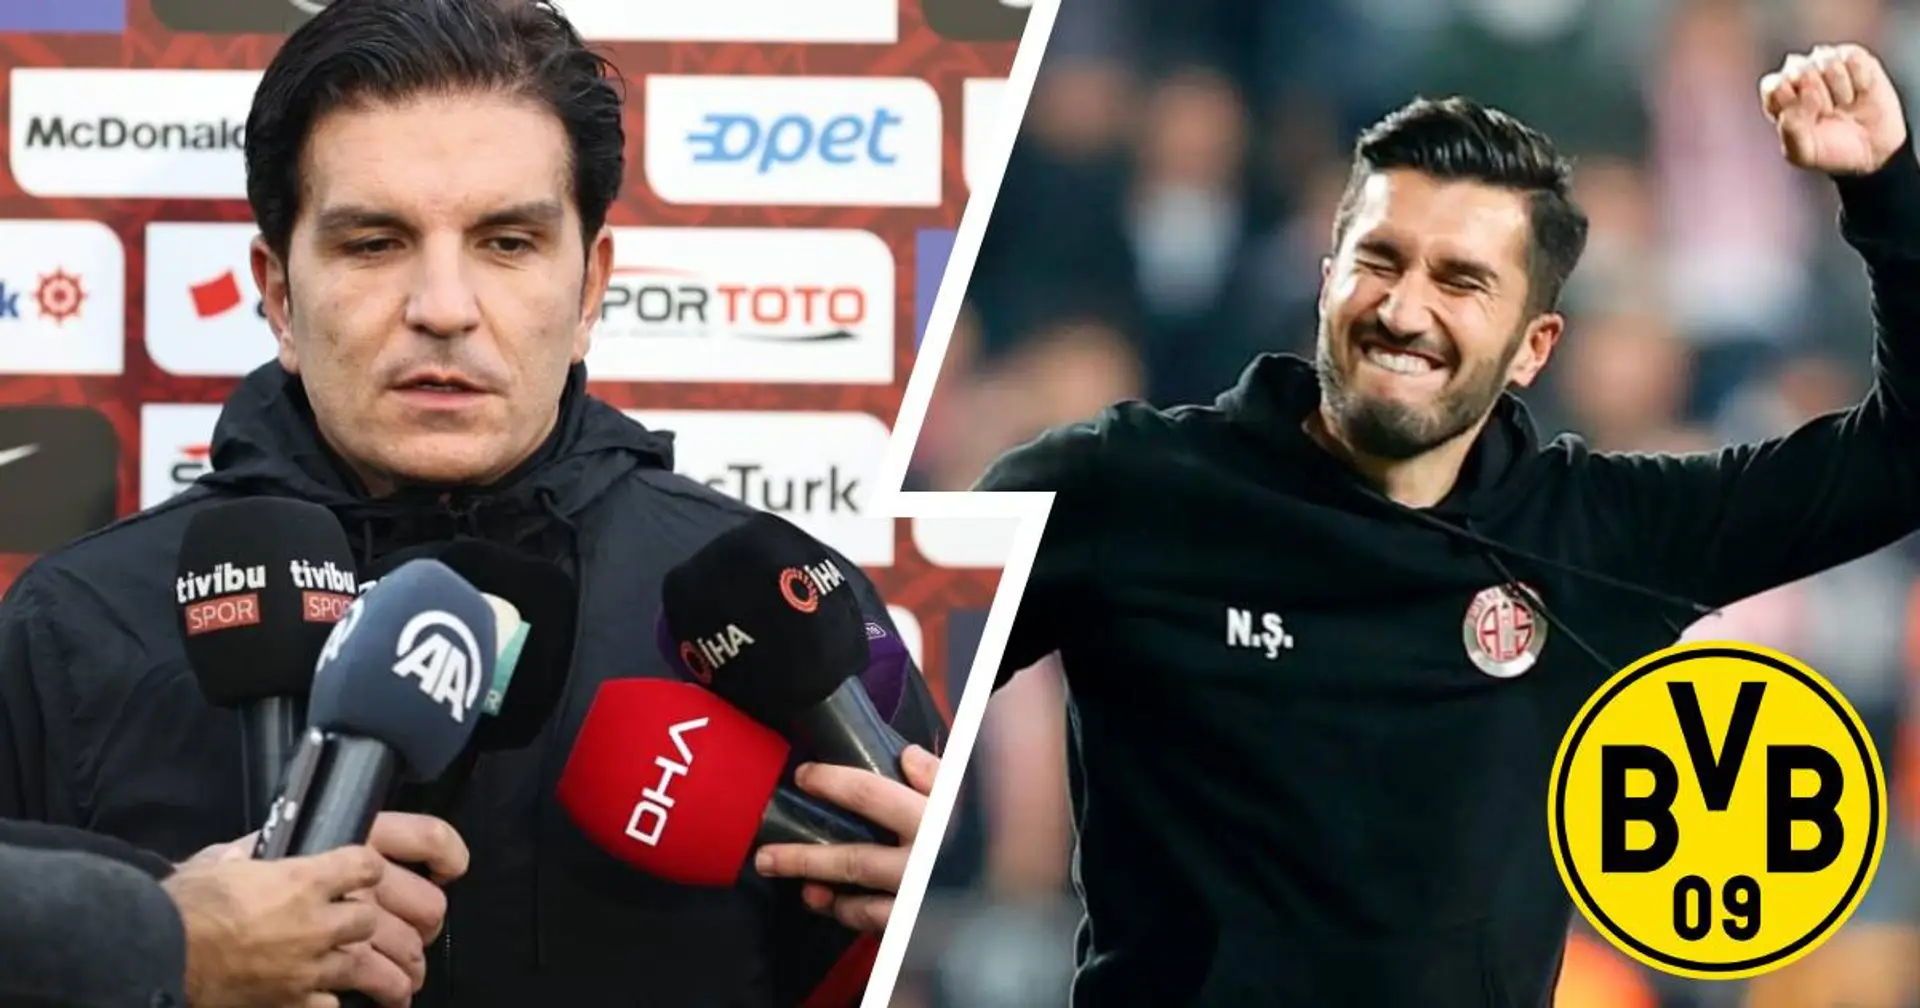 Türkei-Co-Trainer traut Nuri Sahin BVB-Job zu: Wenn er so weitermacht, führt daran wohl kein Weg vorbei